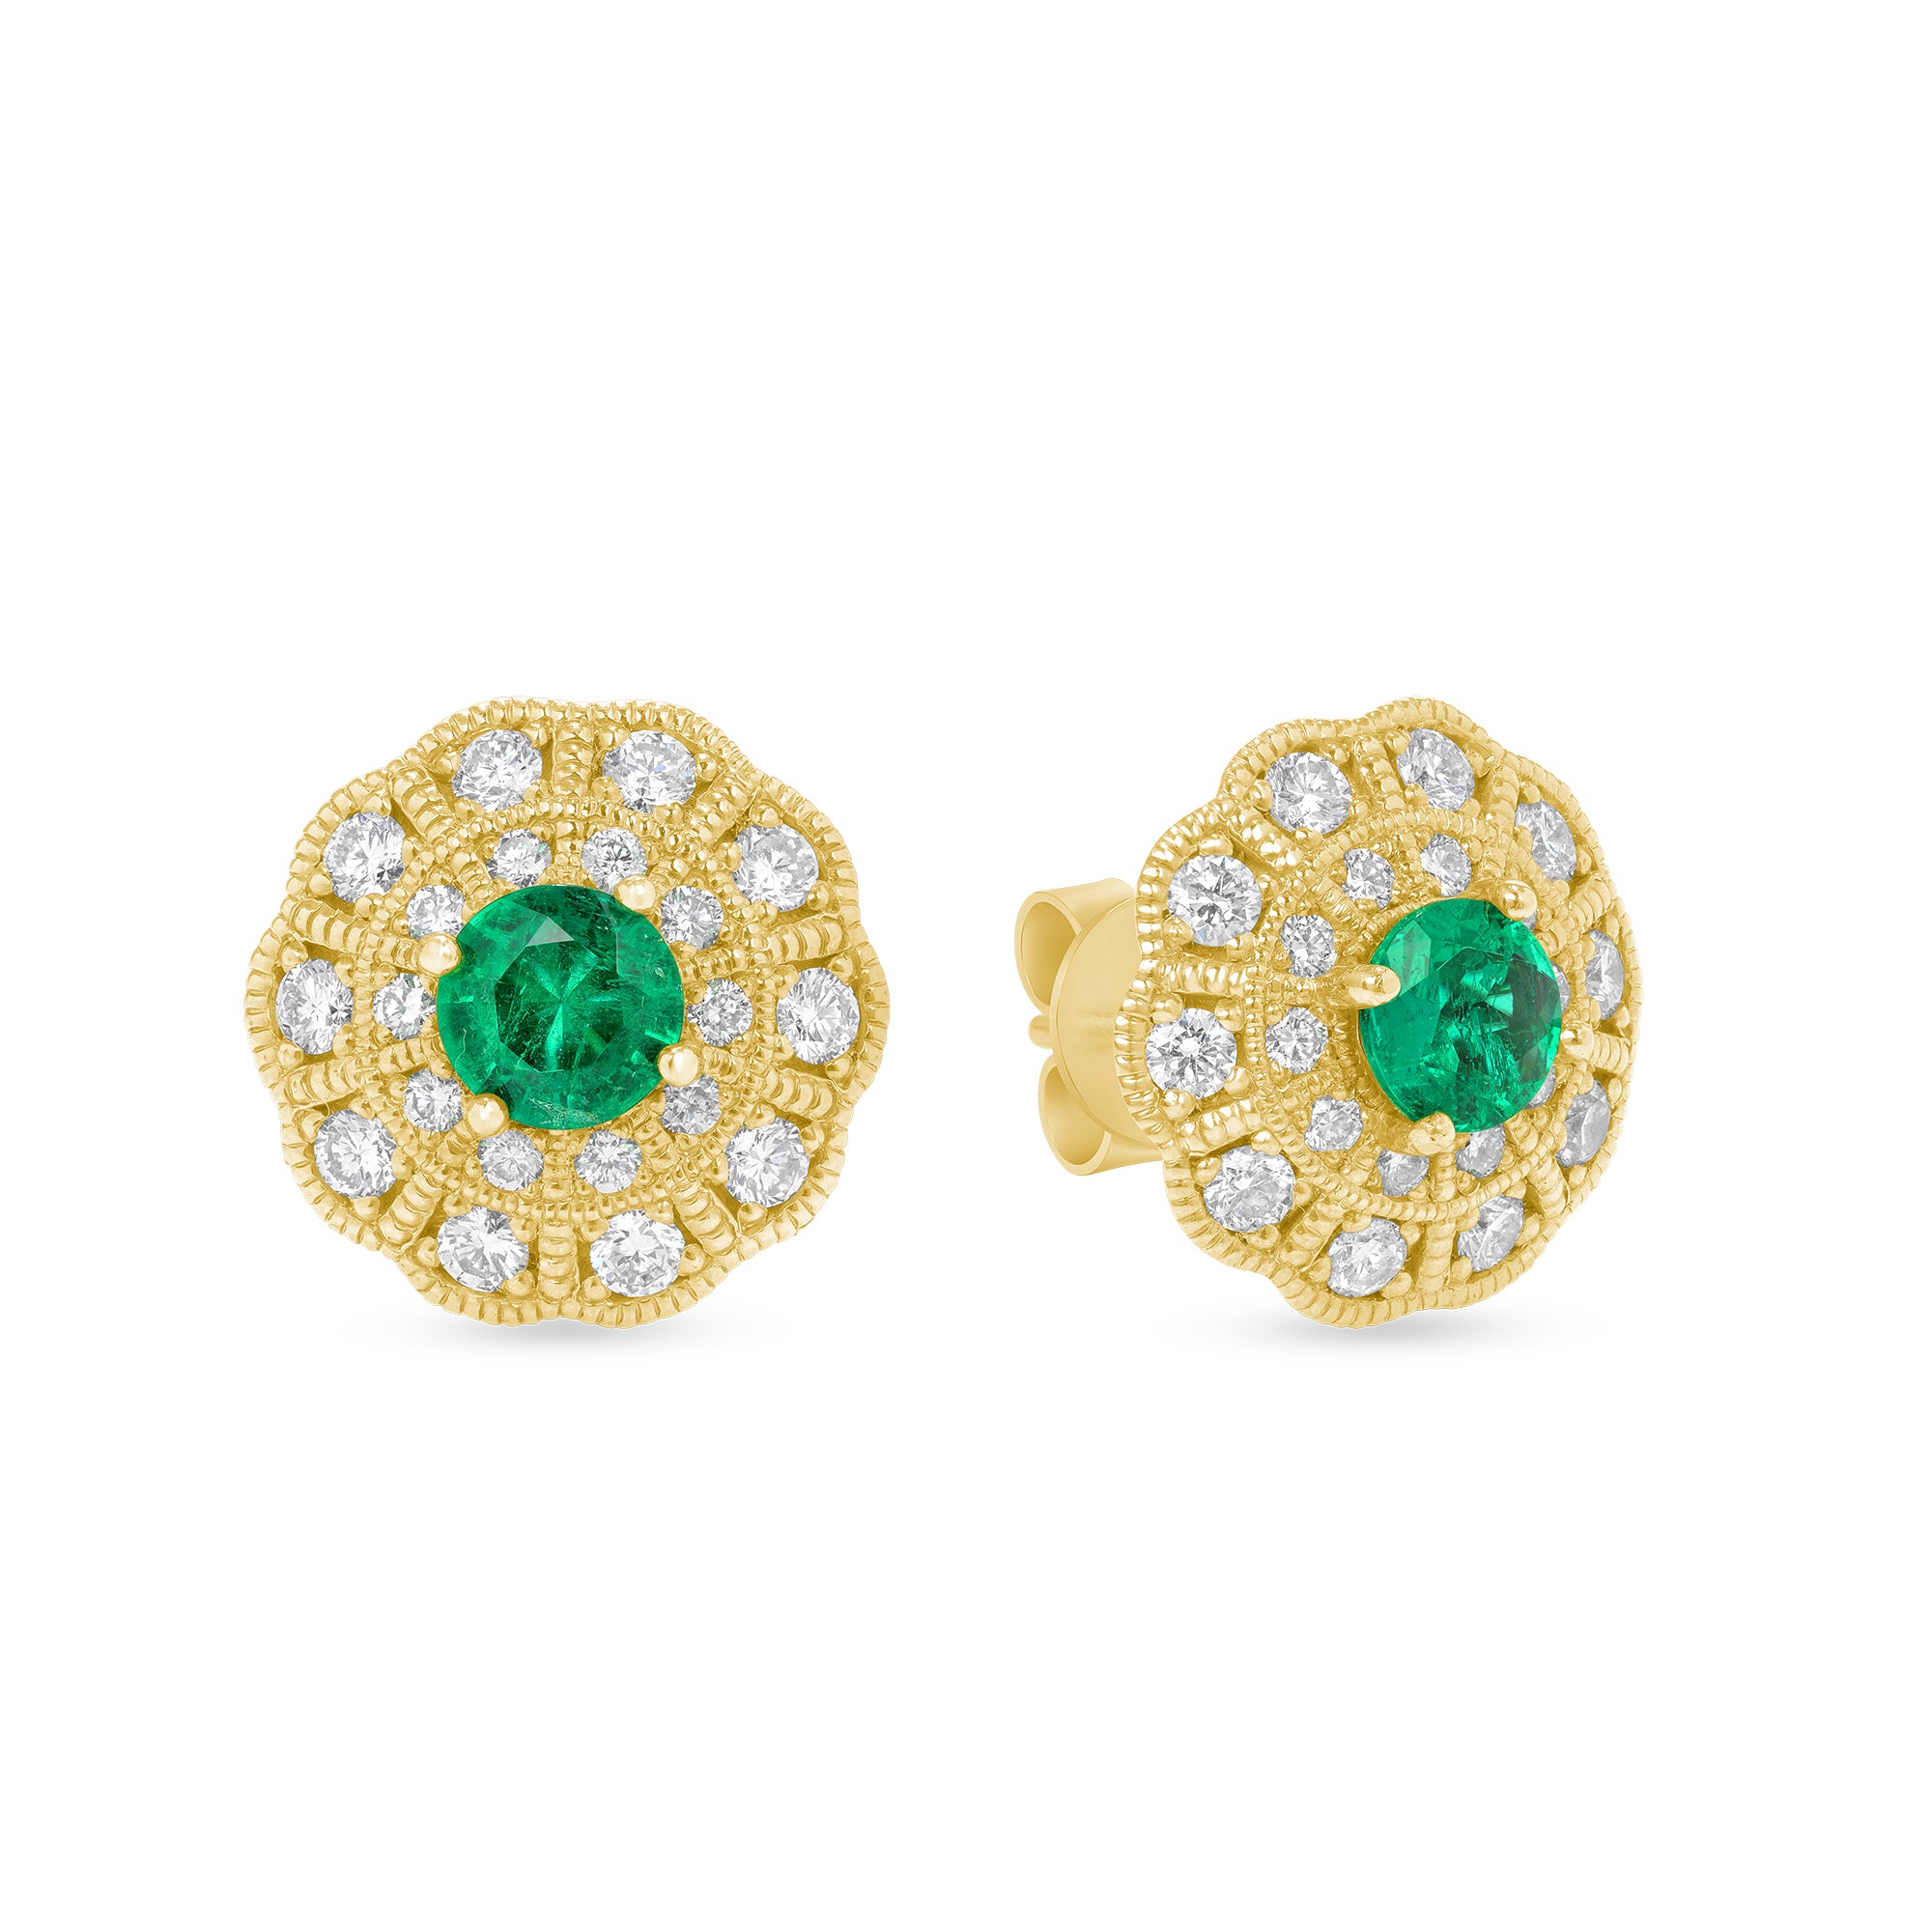 Green Emerald And Diamond Halo Earrings In 18 karat Yellow gold